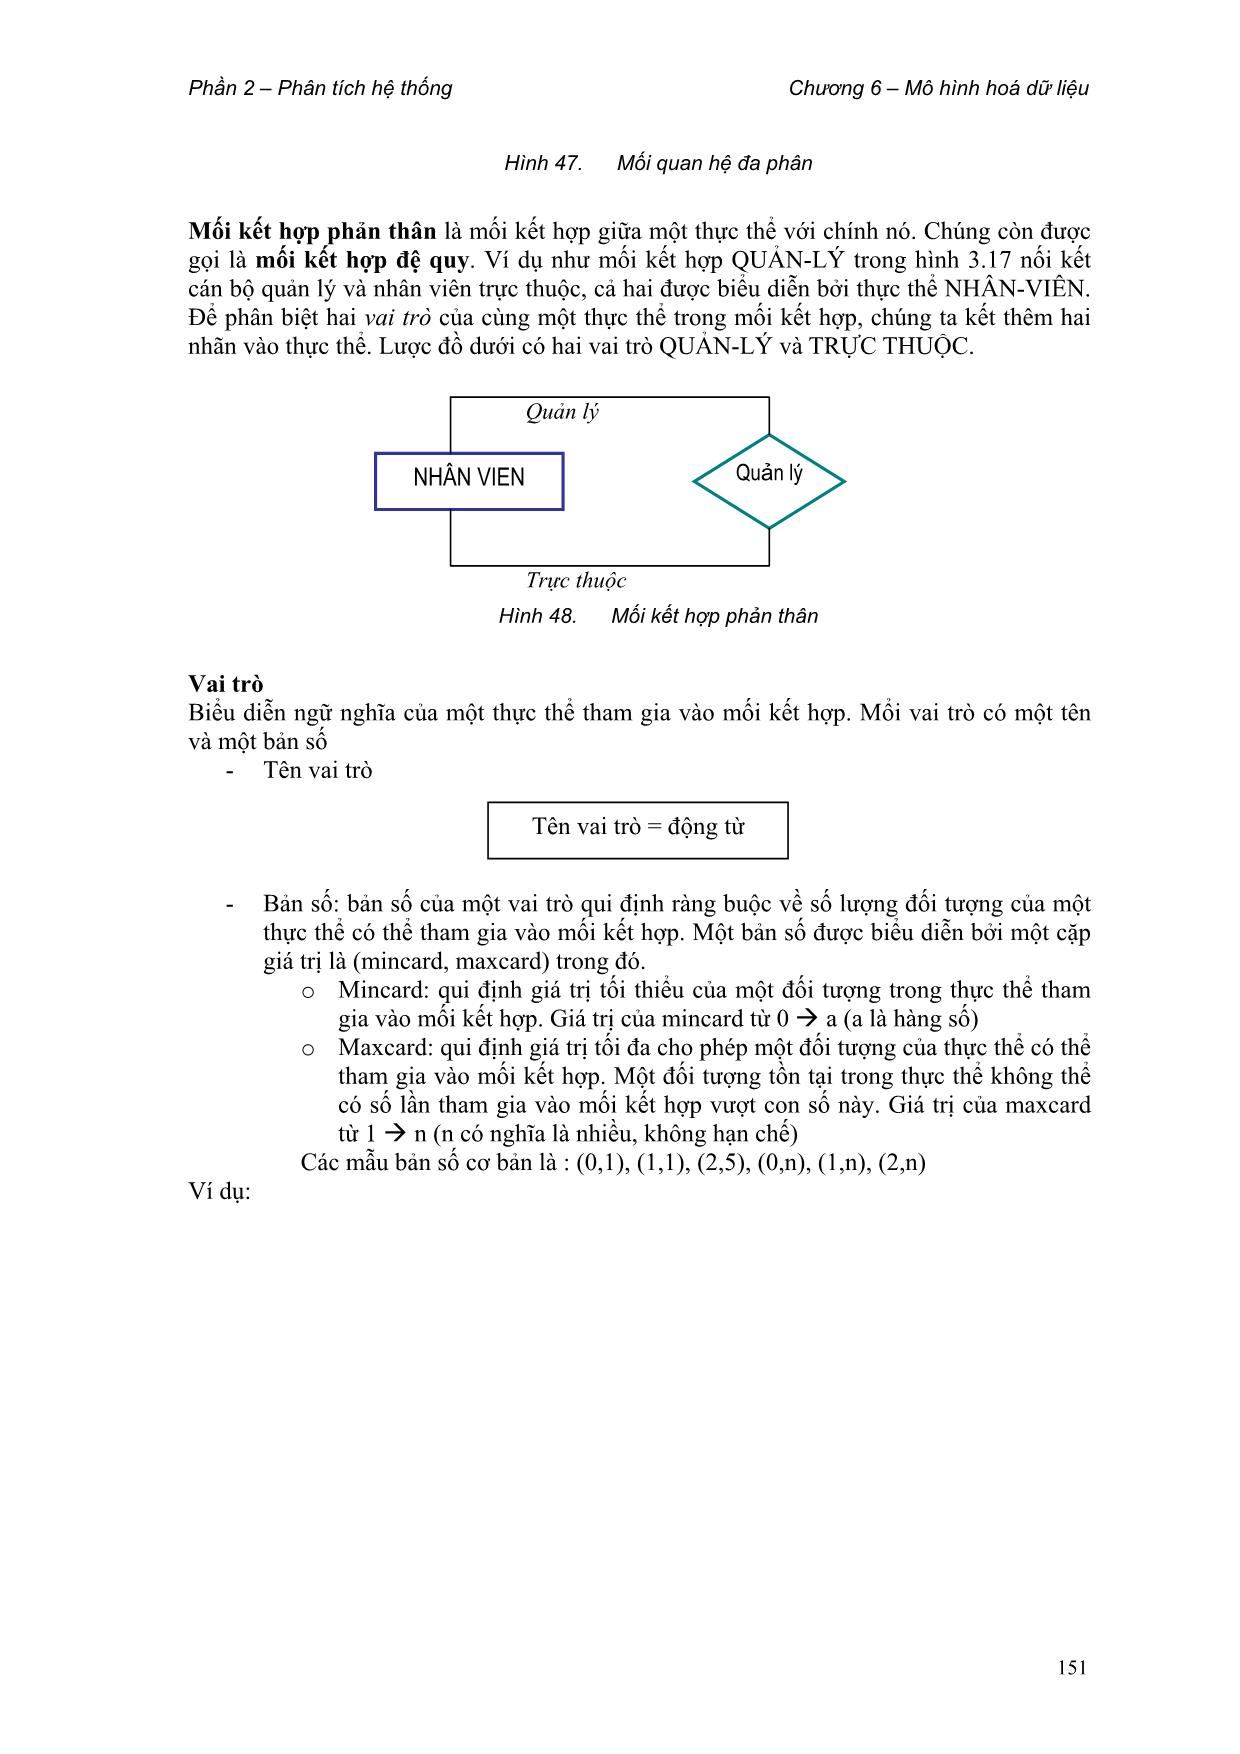 Giáo trình Phân tích thiết kế hệ thống thông tin (Phần 2) trang 4